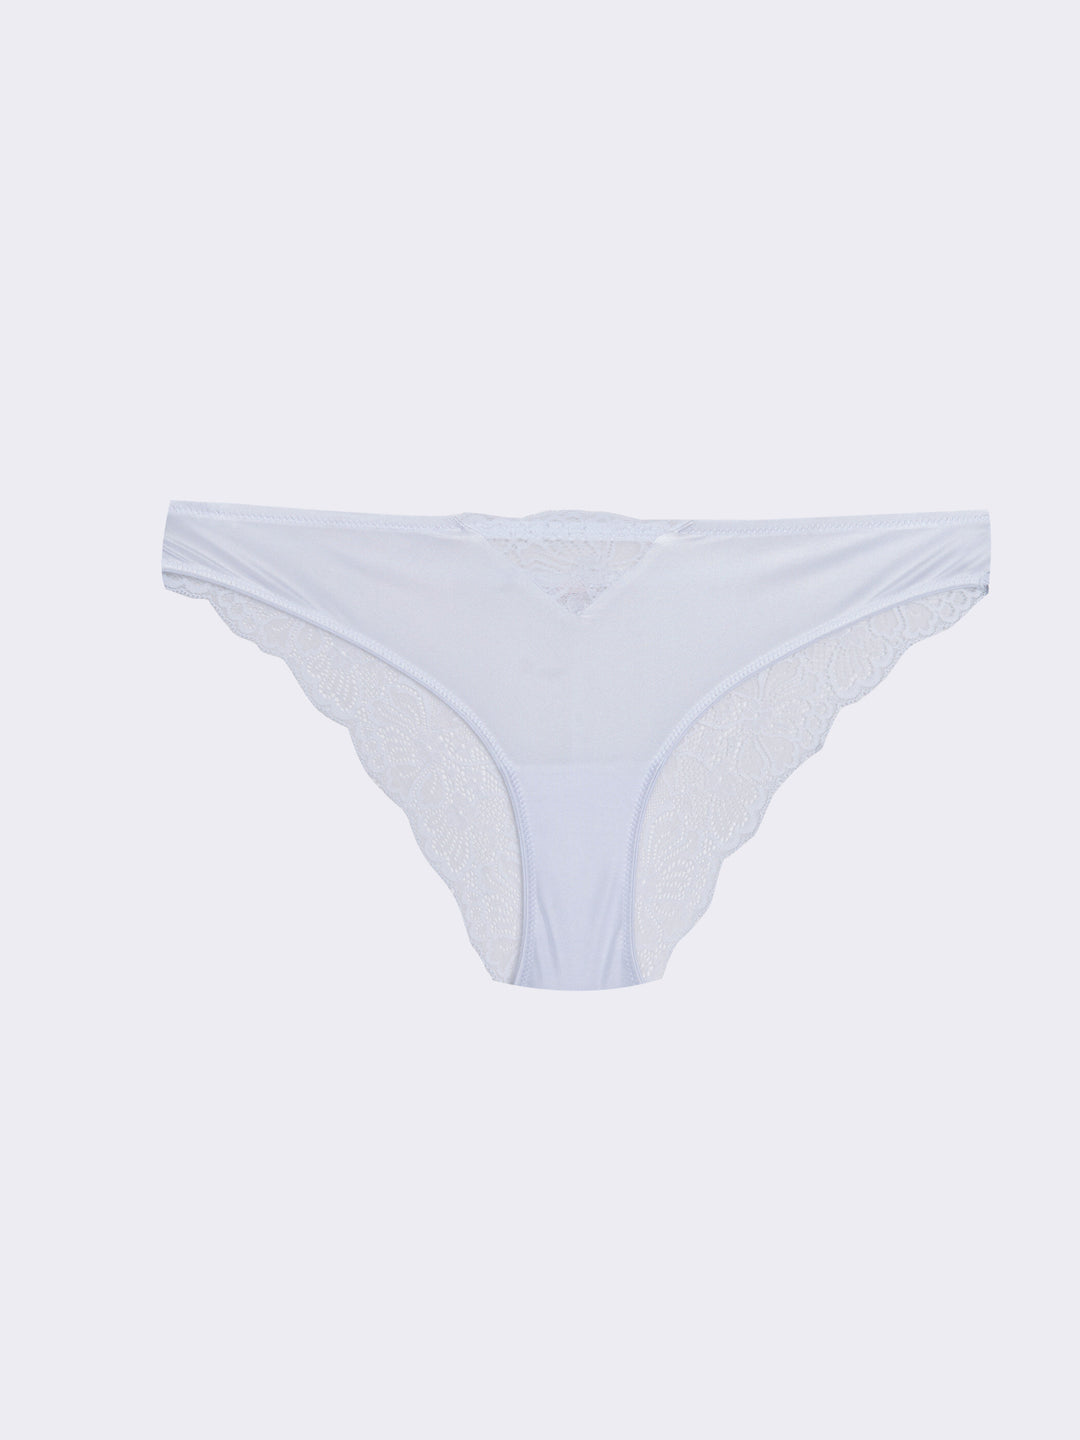 Underwear - Knicker LC Waikiki, Moudda Tunisie S2HI30Z8